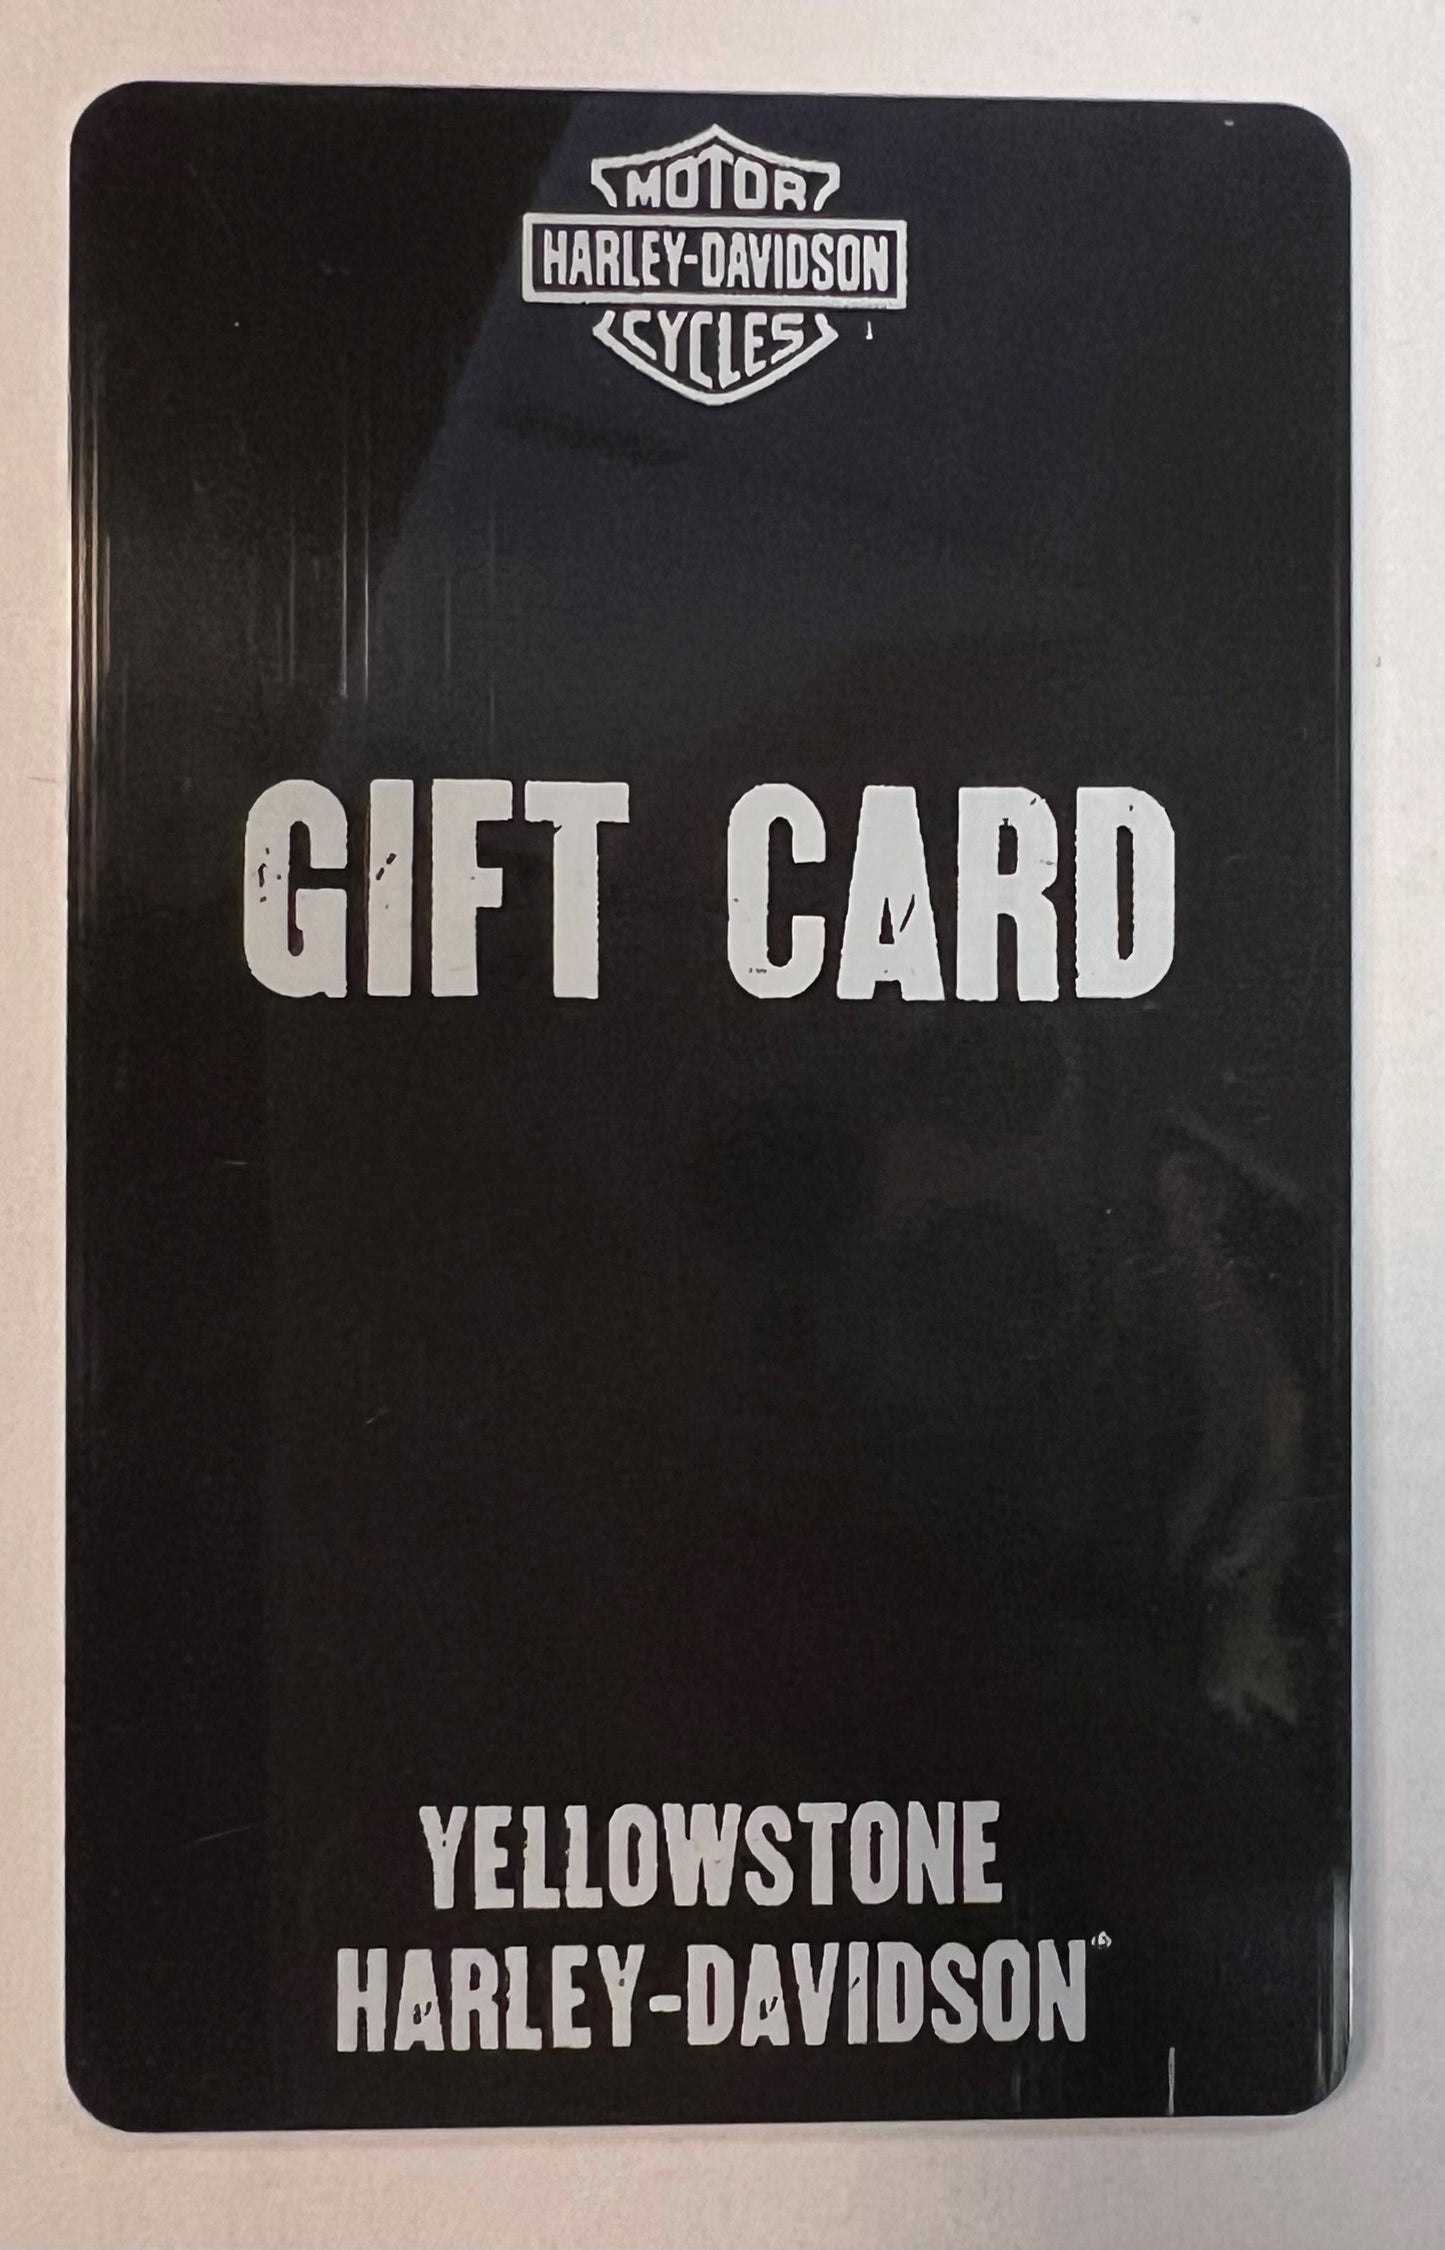 Yellowstone Harley-Davidson Gift Card